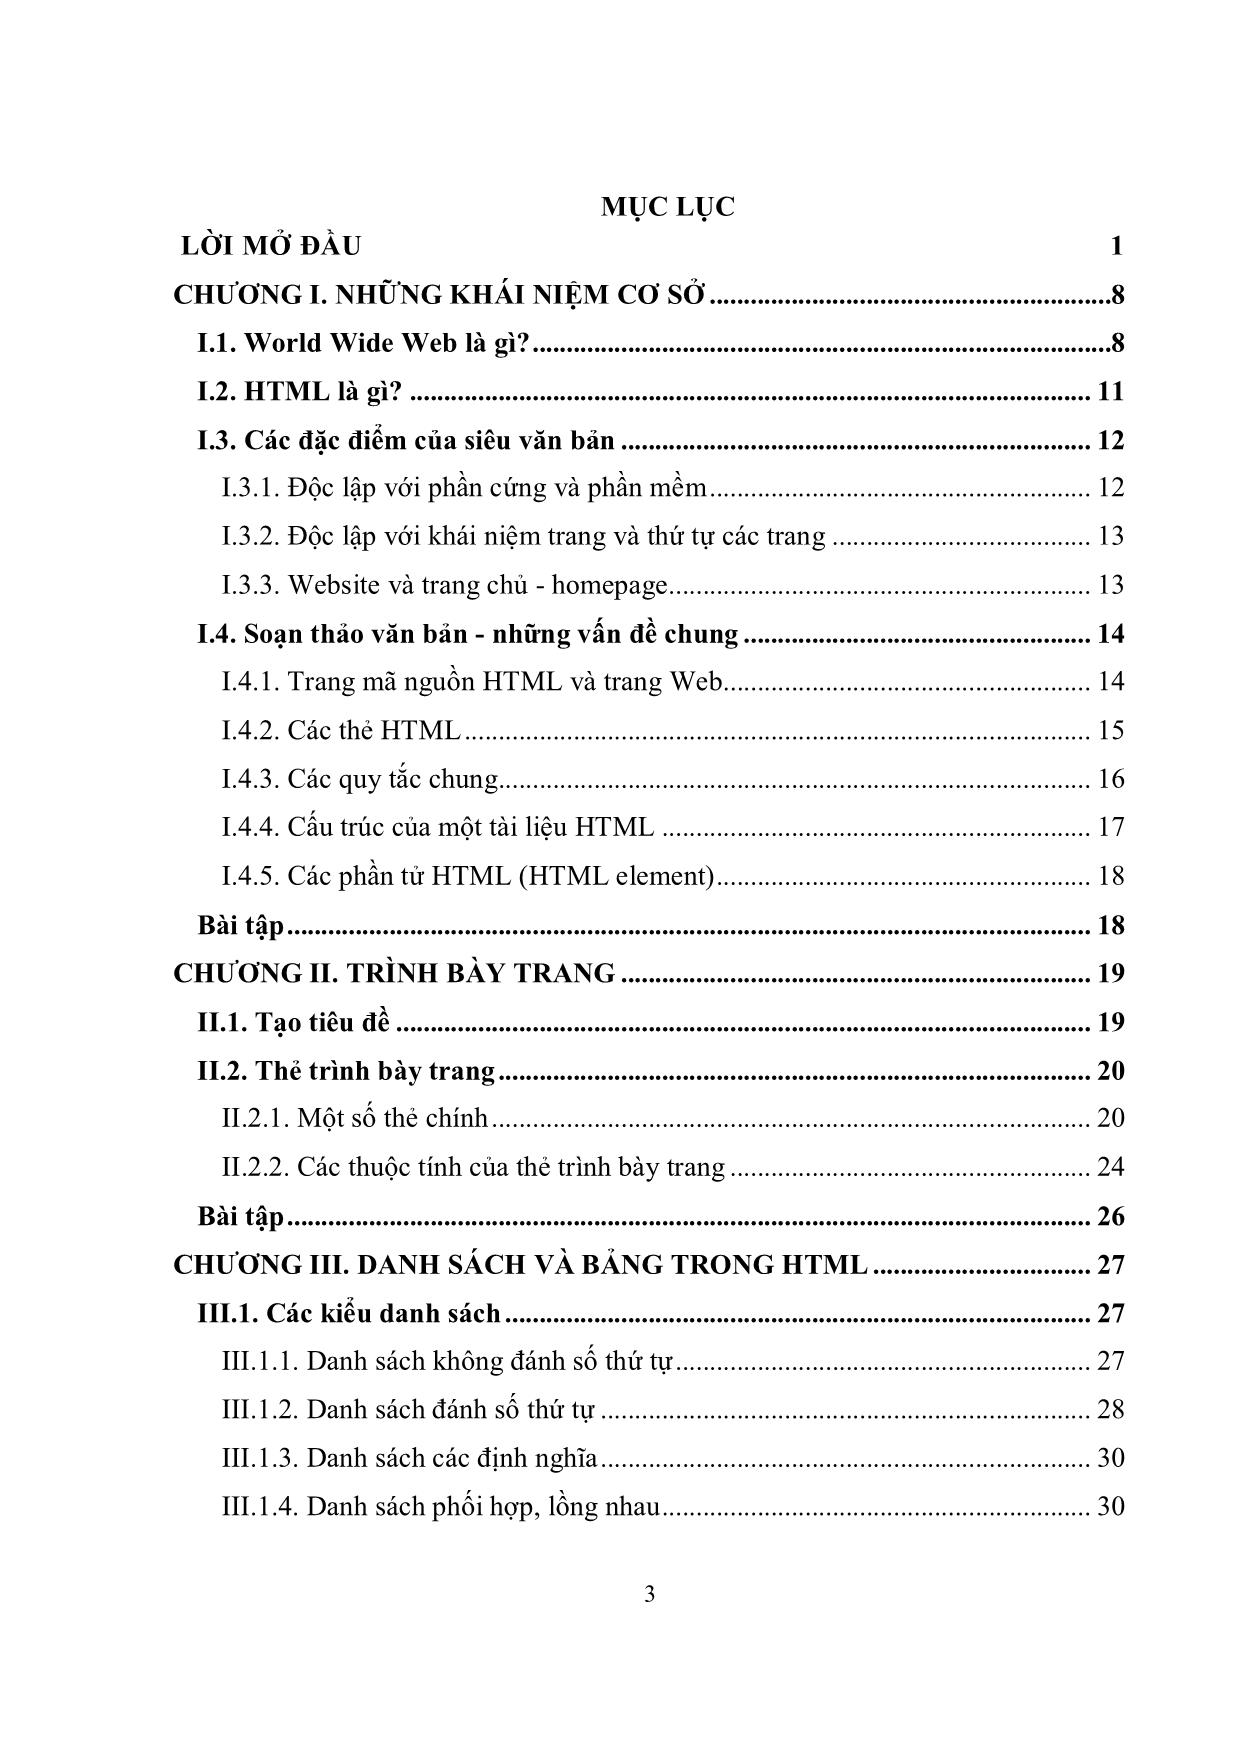 Giáo trình Ngôn ngữ siêu văn bản HTML (Phần 1) trang 4